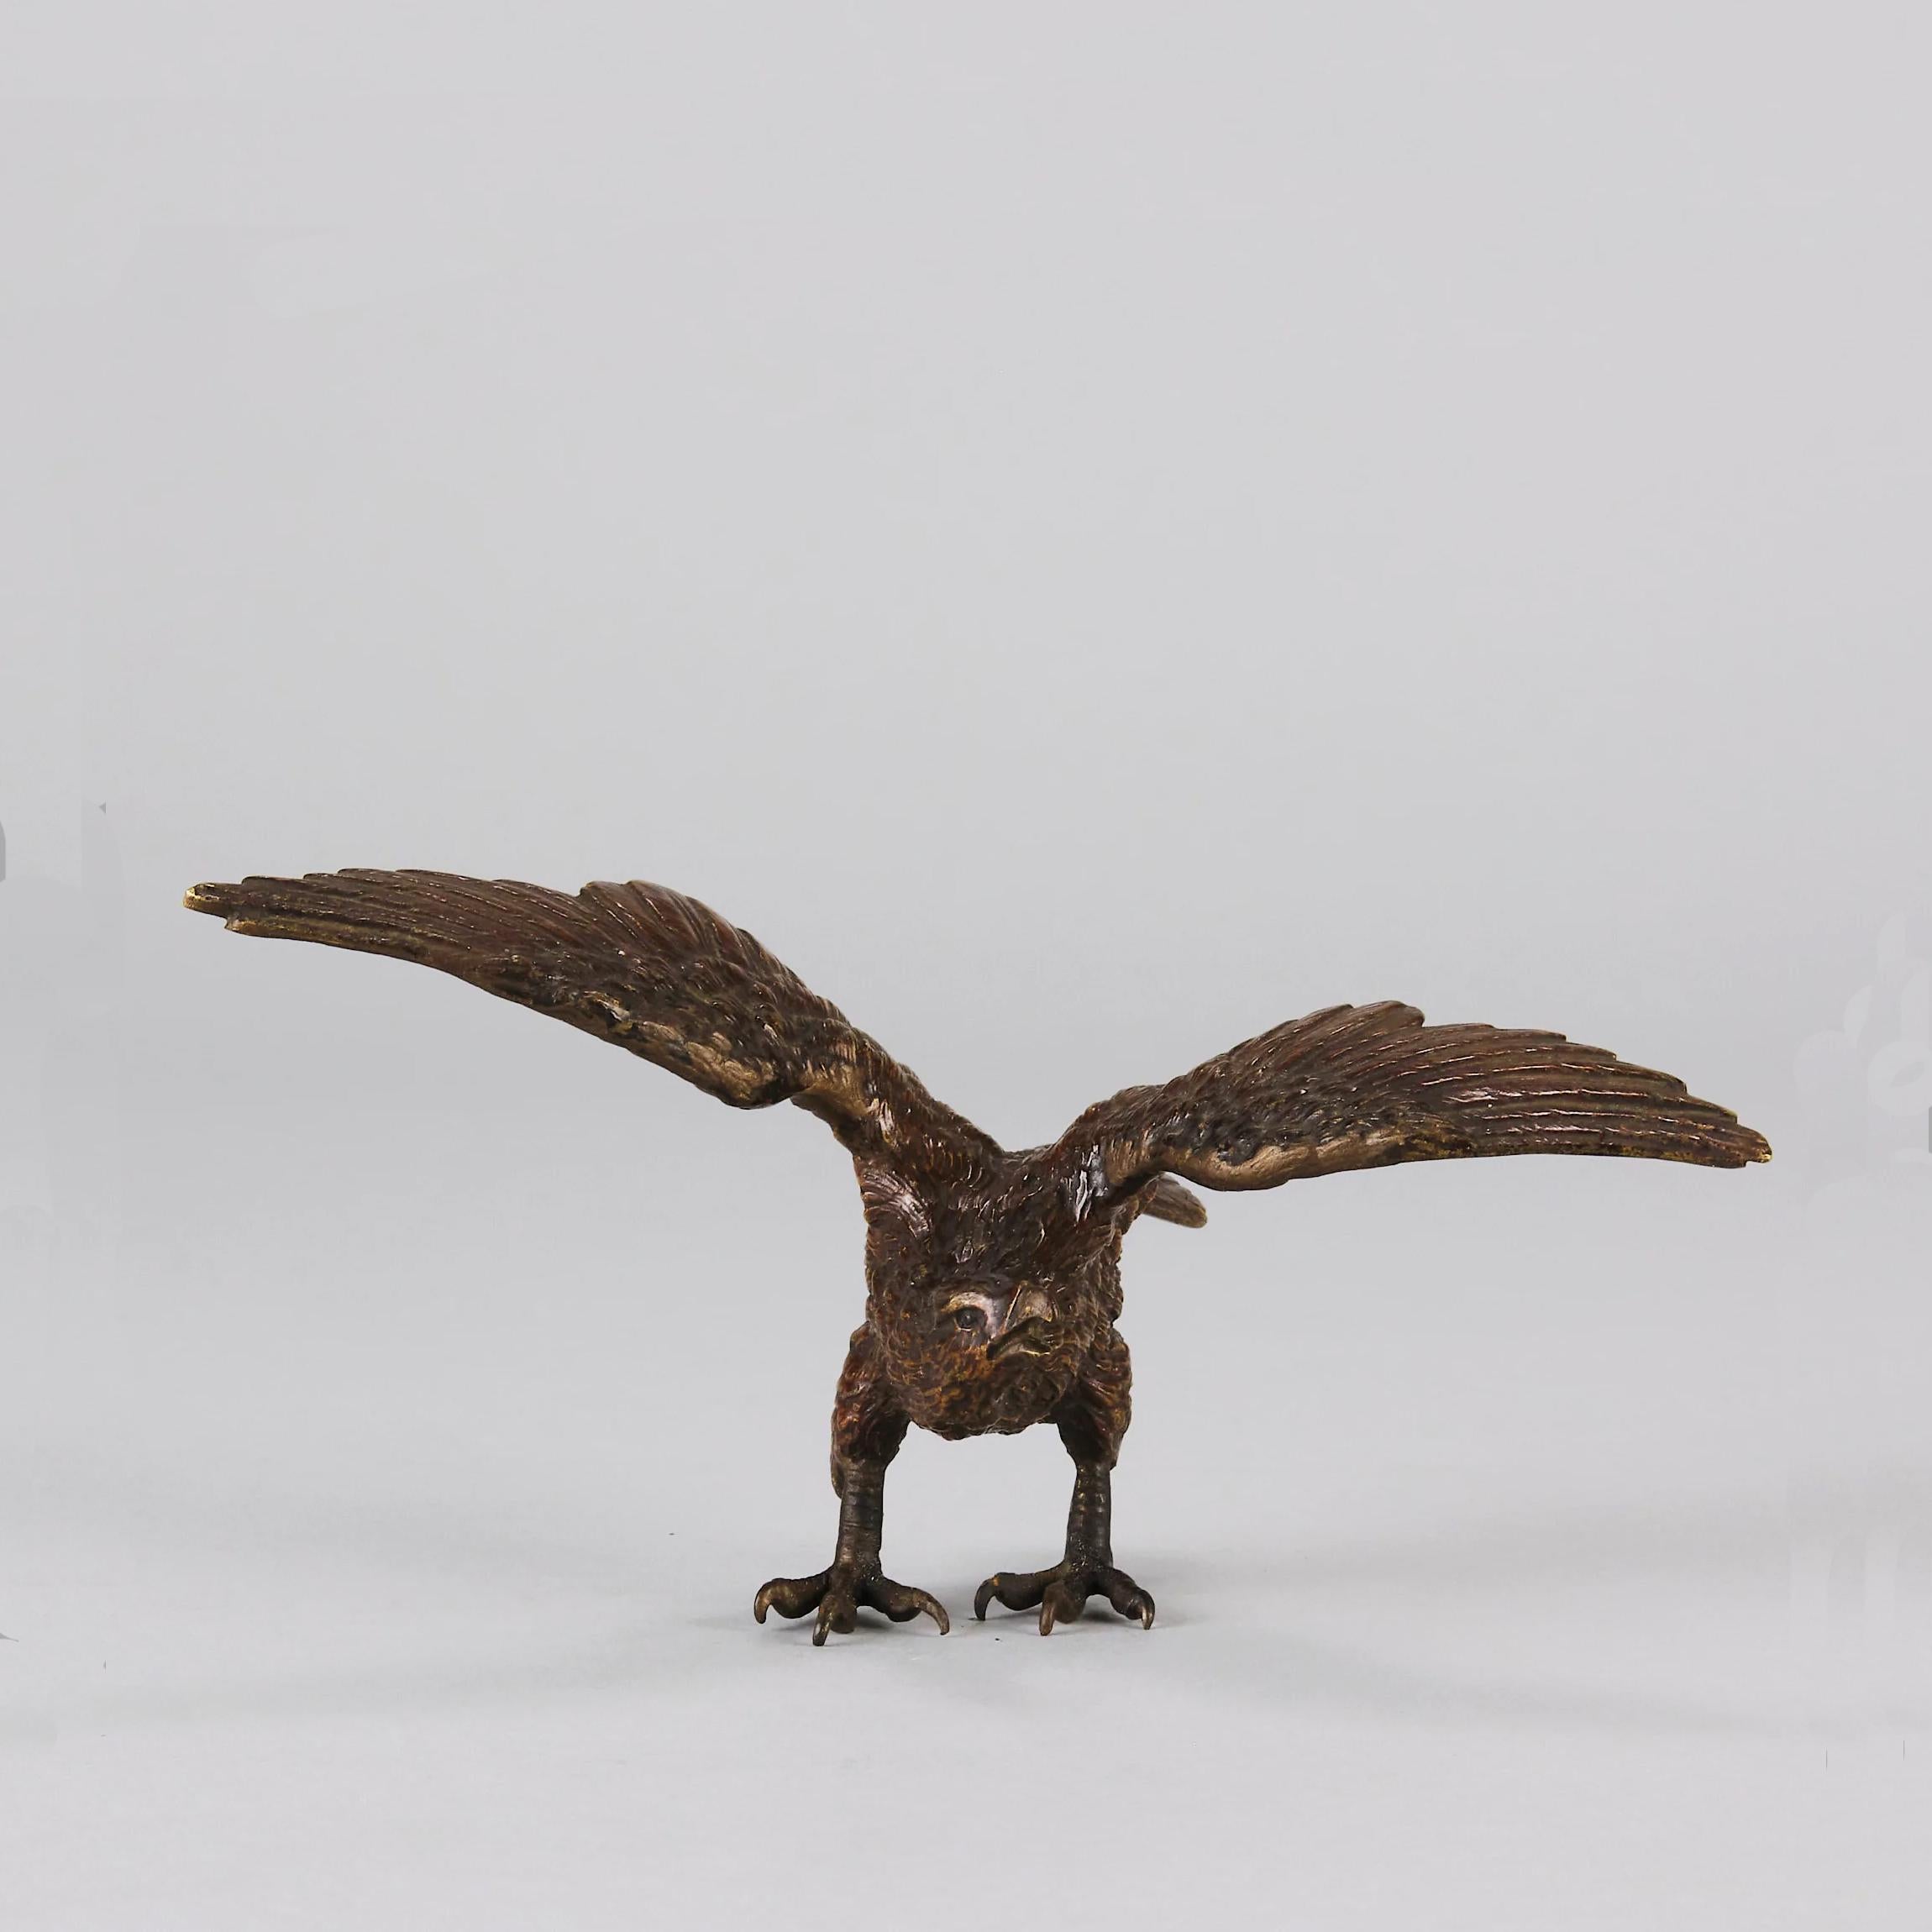 Très belle étude en bronze autrichien peint à froid du début du XXe siècle représentant un aigle déployant ses ailes. La sculpture se tient naturellement en équilibre sur les serres de l'aigle, en position libre. C'est une merveilleuse